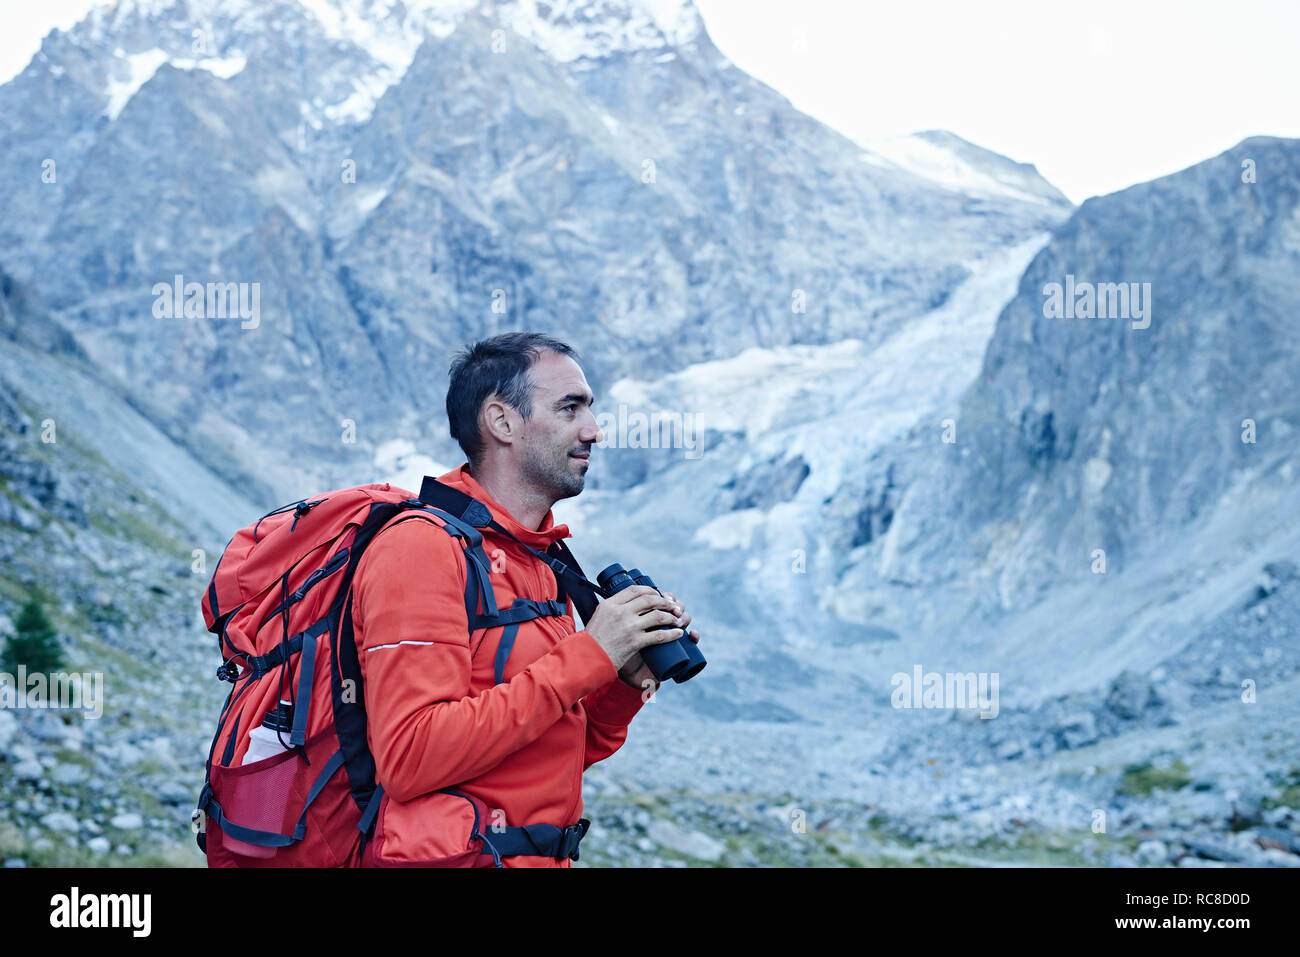 Randonneur à l'aide de jumelles, Mont Cervin, Matterhorn, Valais, Suisse Banque D'Images